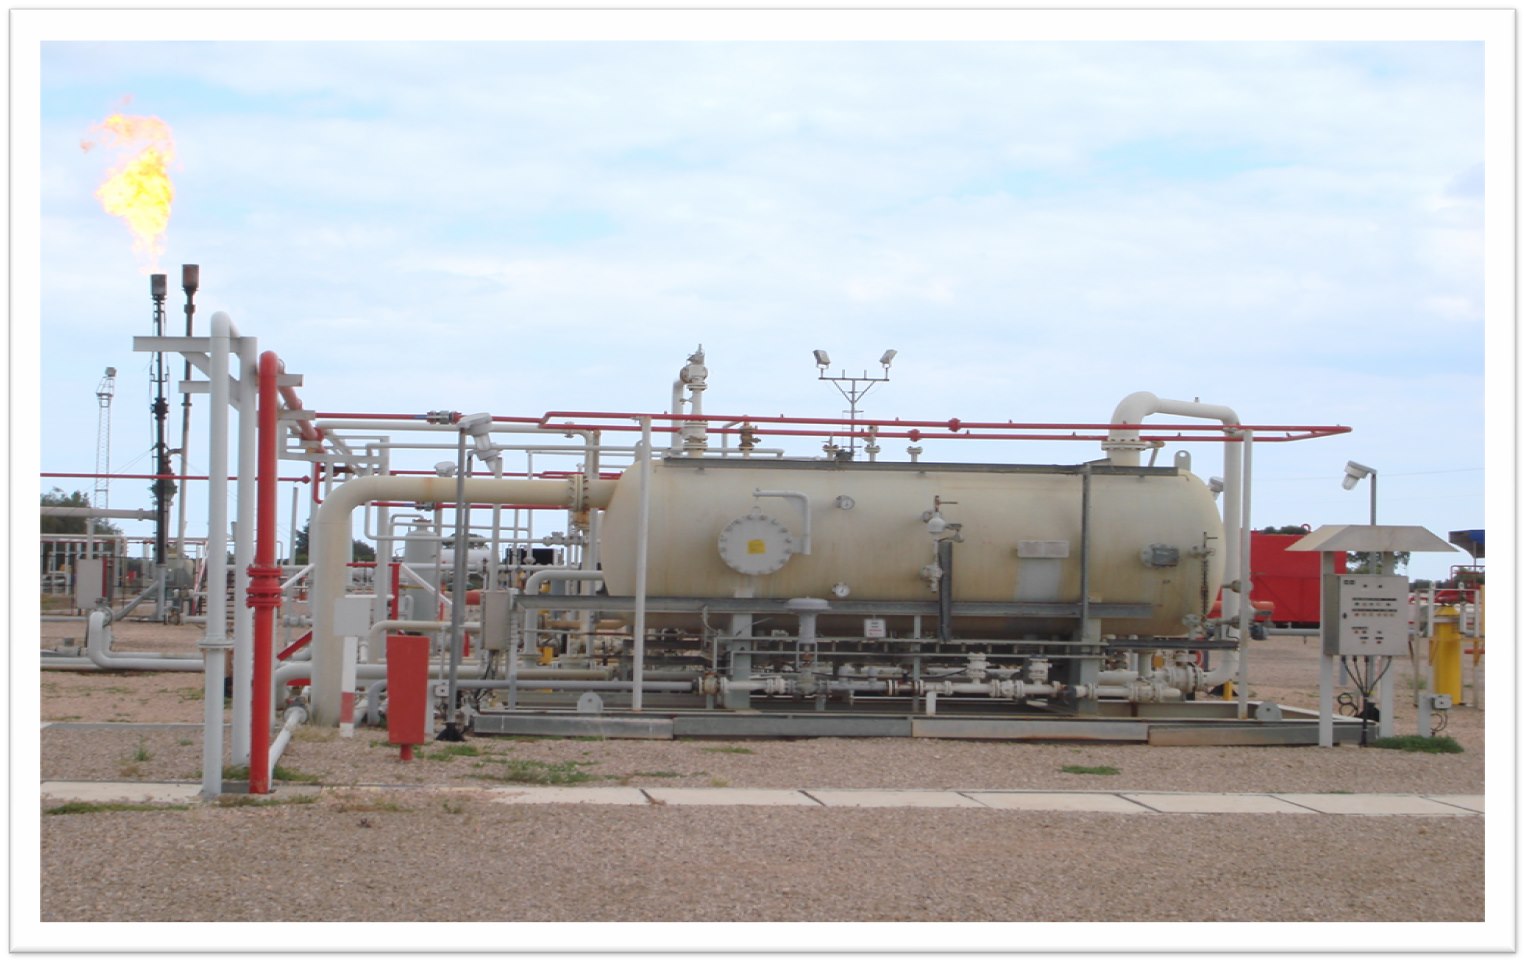 La production de Panoro Energy dépasse désormais 5 000 barils/jour en Tunisie